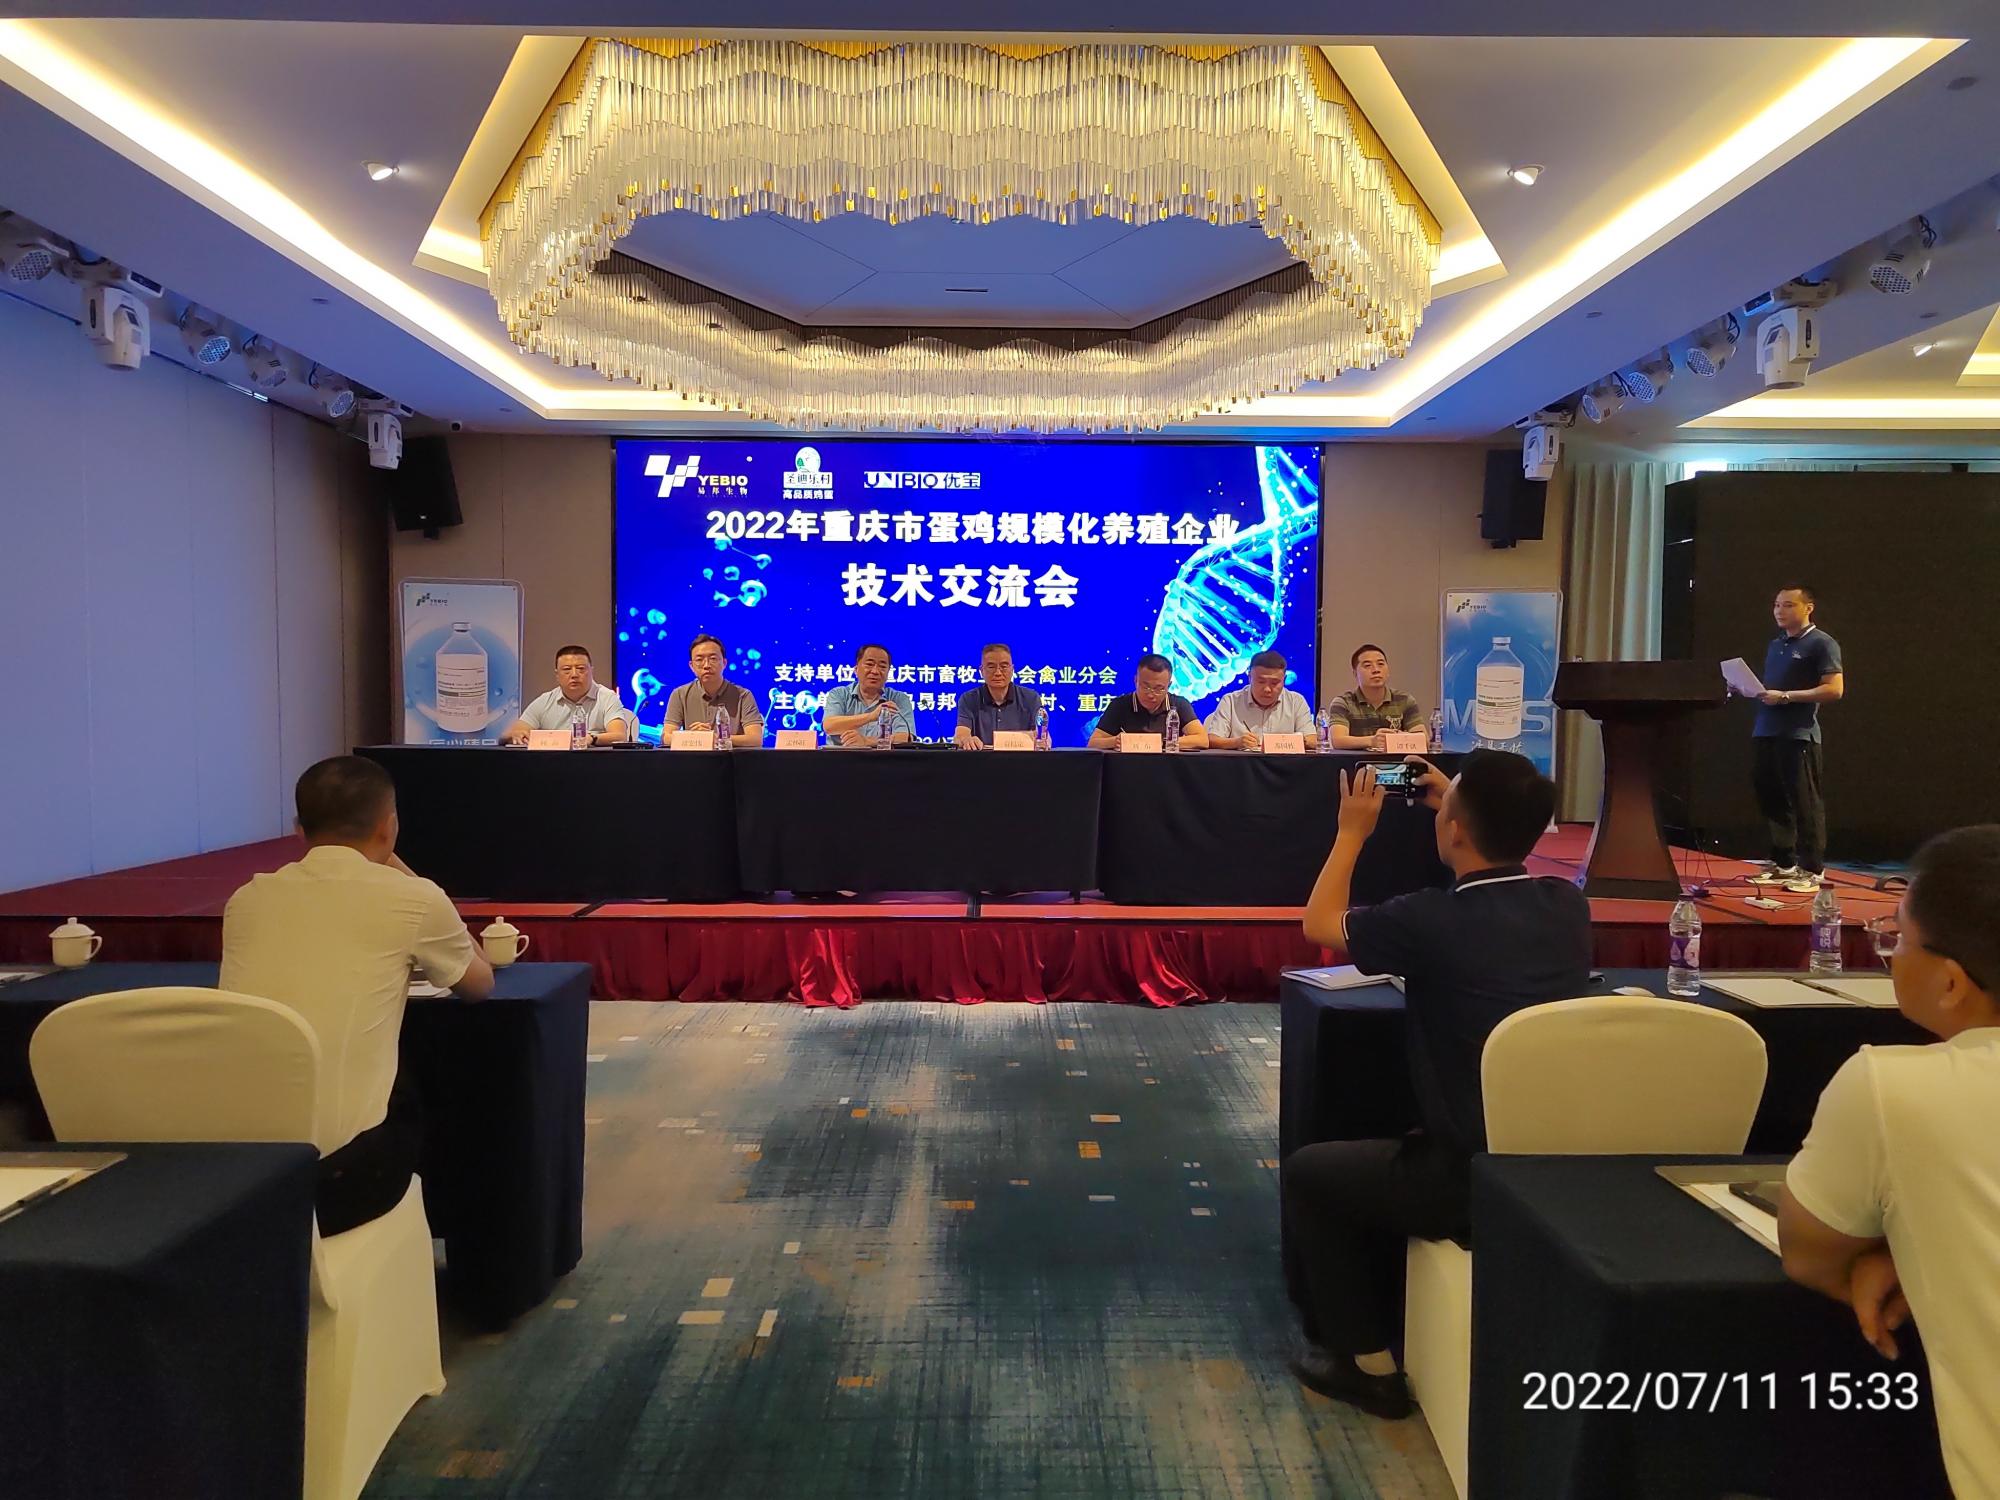 “2022年重庆市蛋鸡规模化养殖企业技术交流会”在渝成功举办